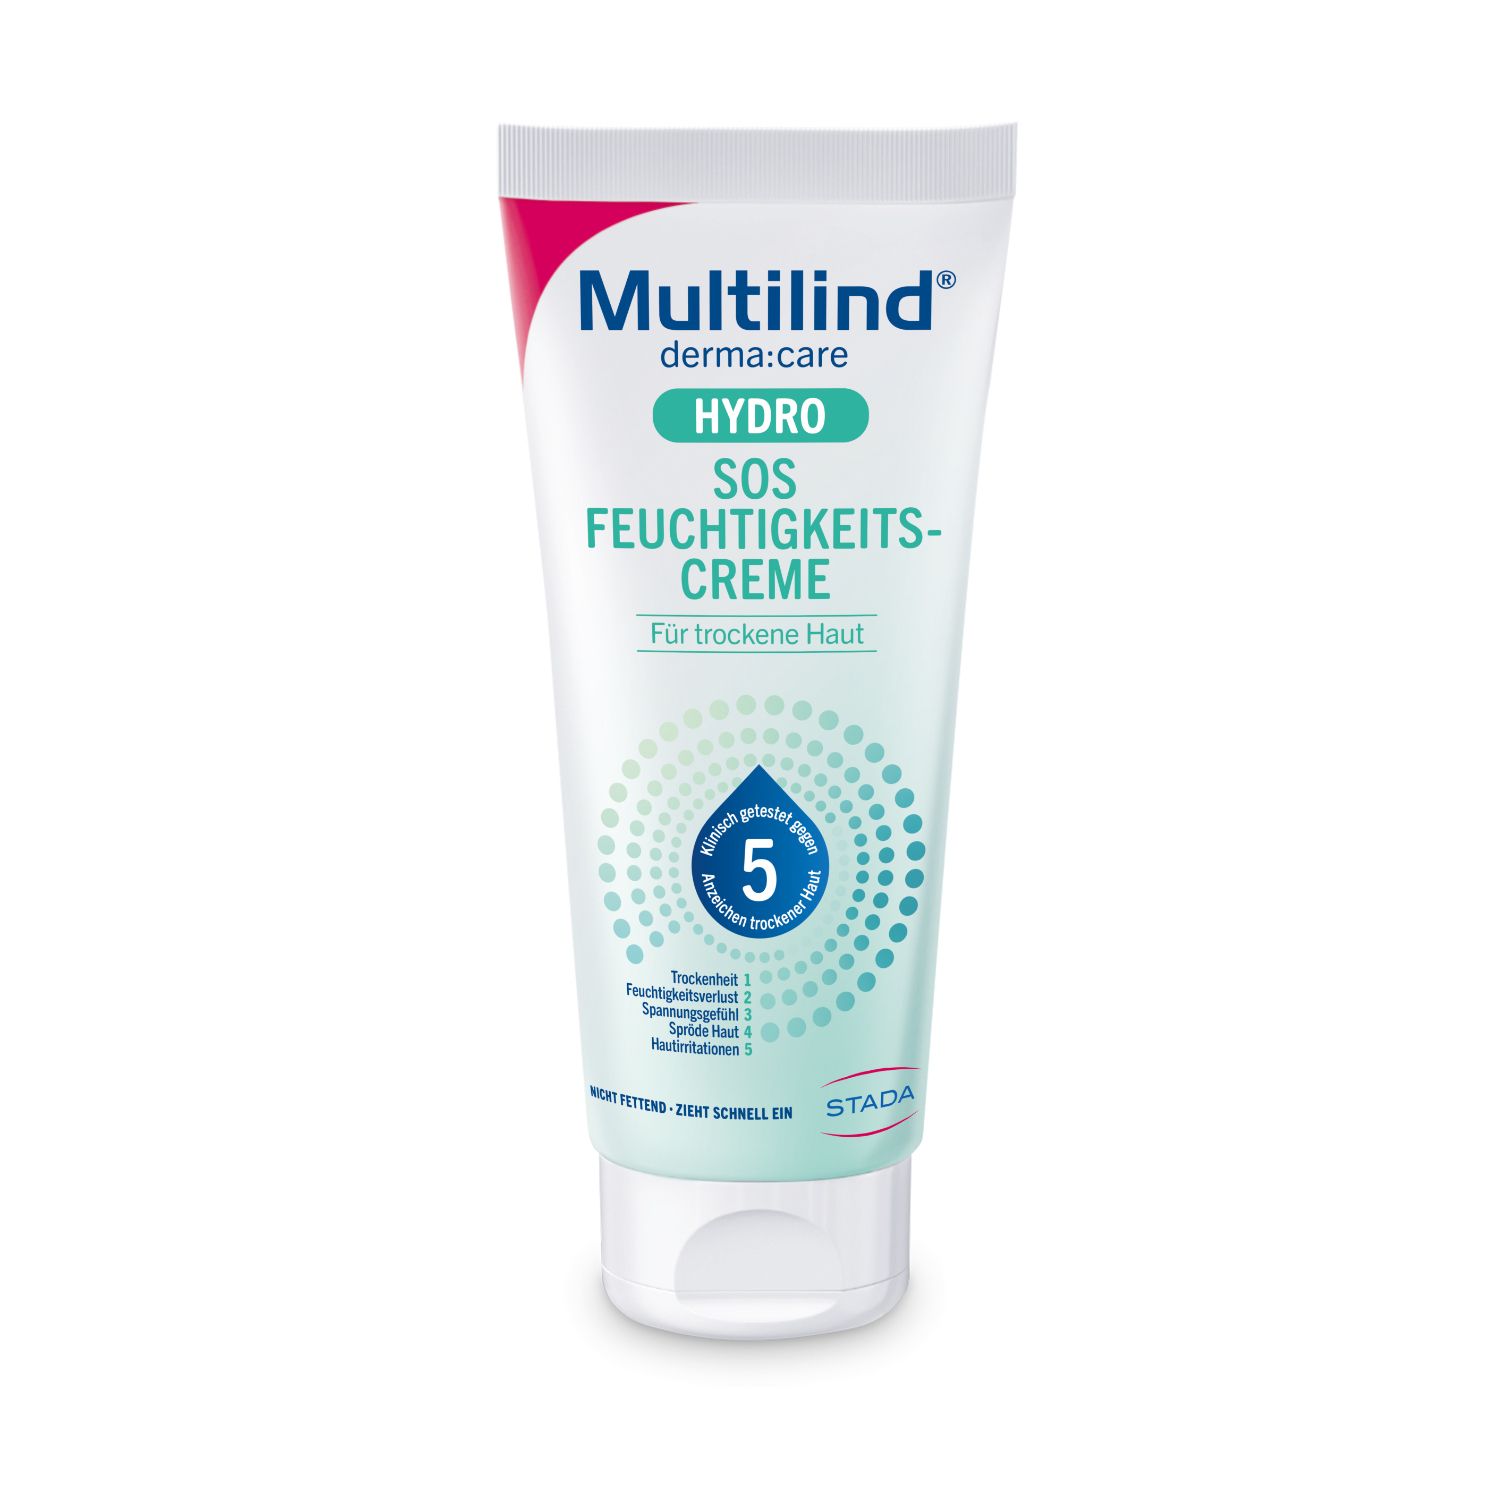 Multilind® derma:care Hydro SOS Feuchtigkeitscreme: Intensive Feuchtigkeit. Für trockene, raue Hautstellen. Pflegt mit C